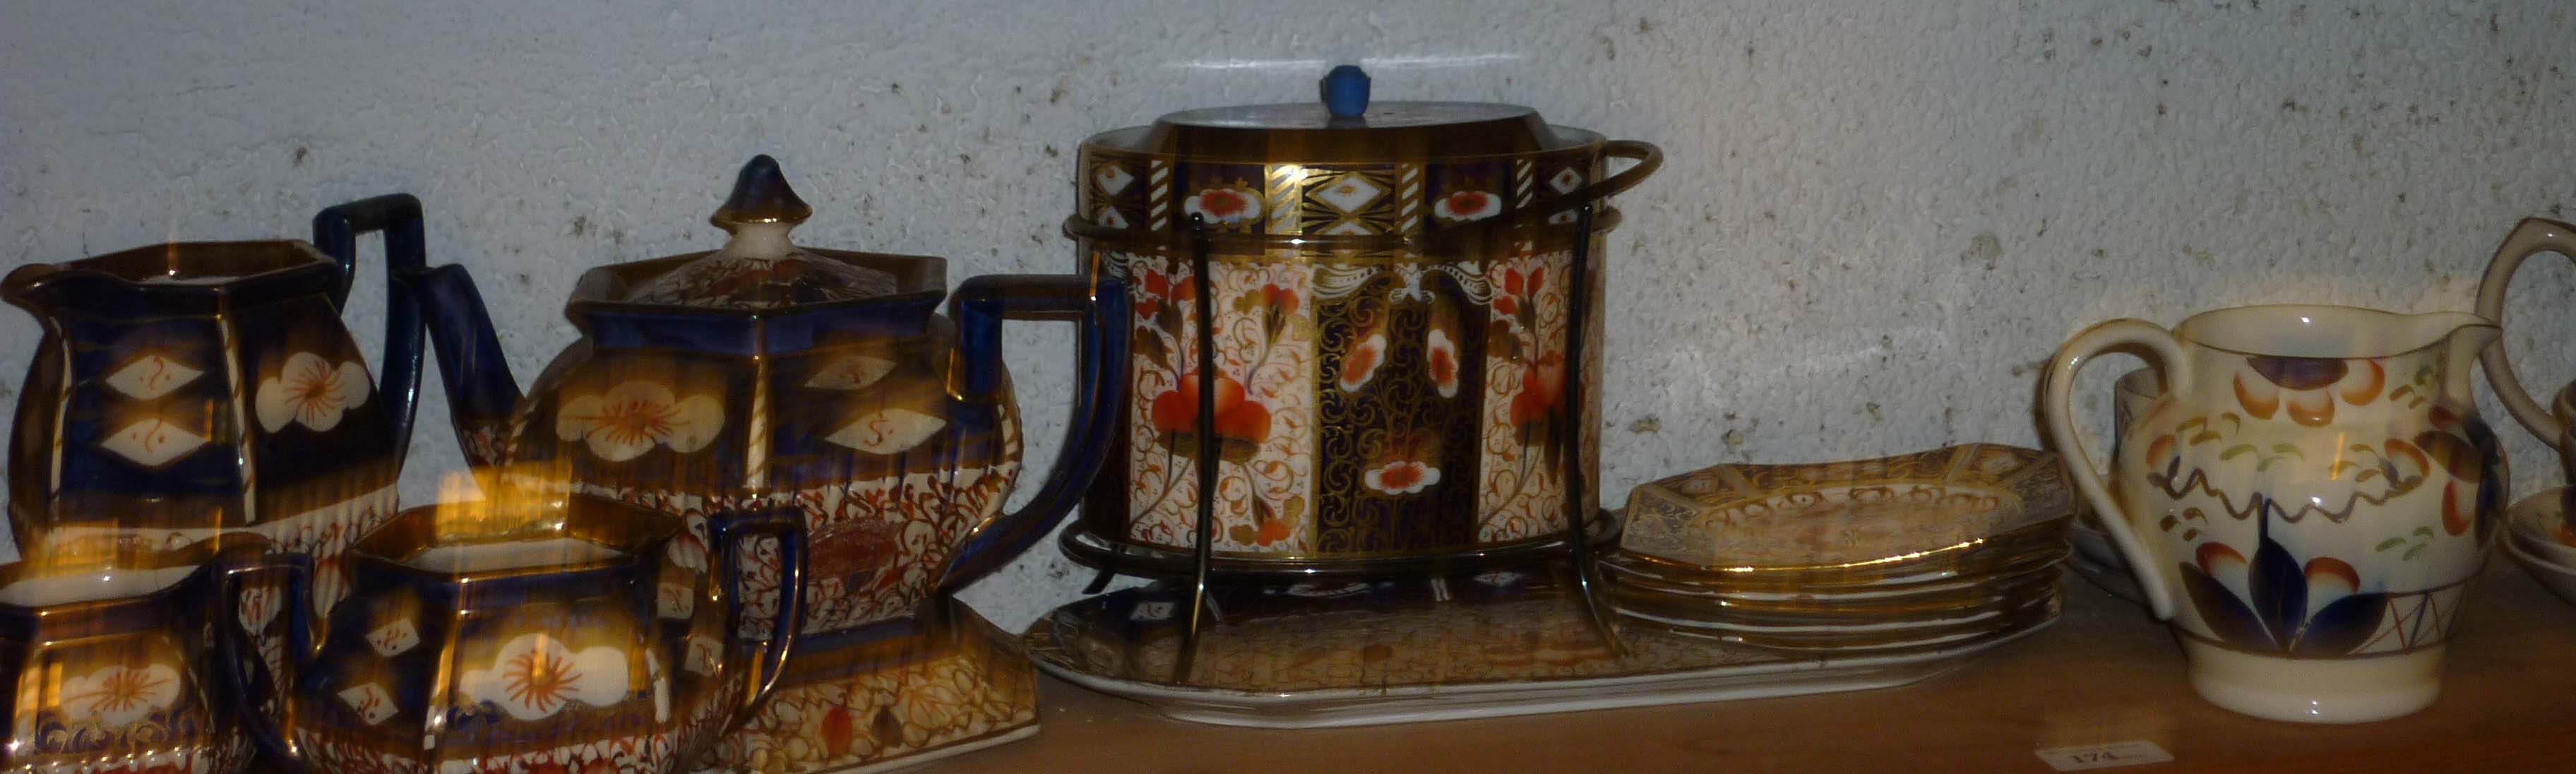 Imari Sadler teapot and pair graduated jugs, Davenport Imari biscuit barrel and danswich set plus